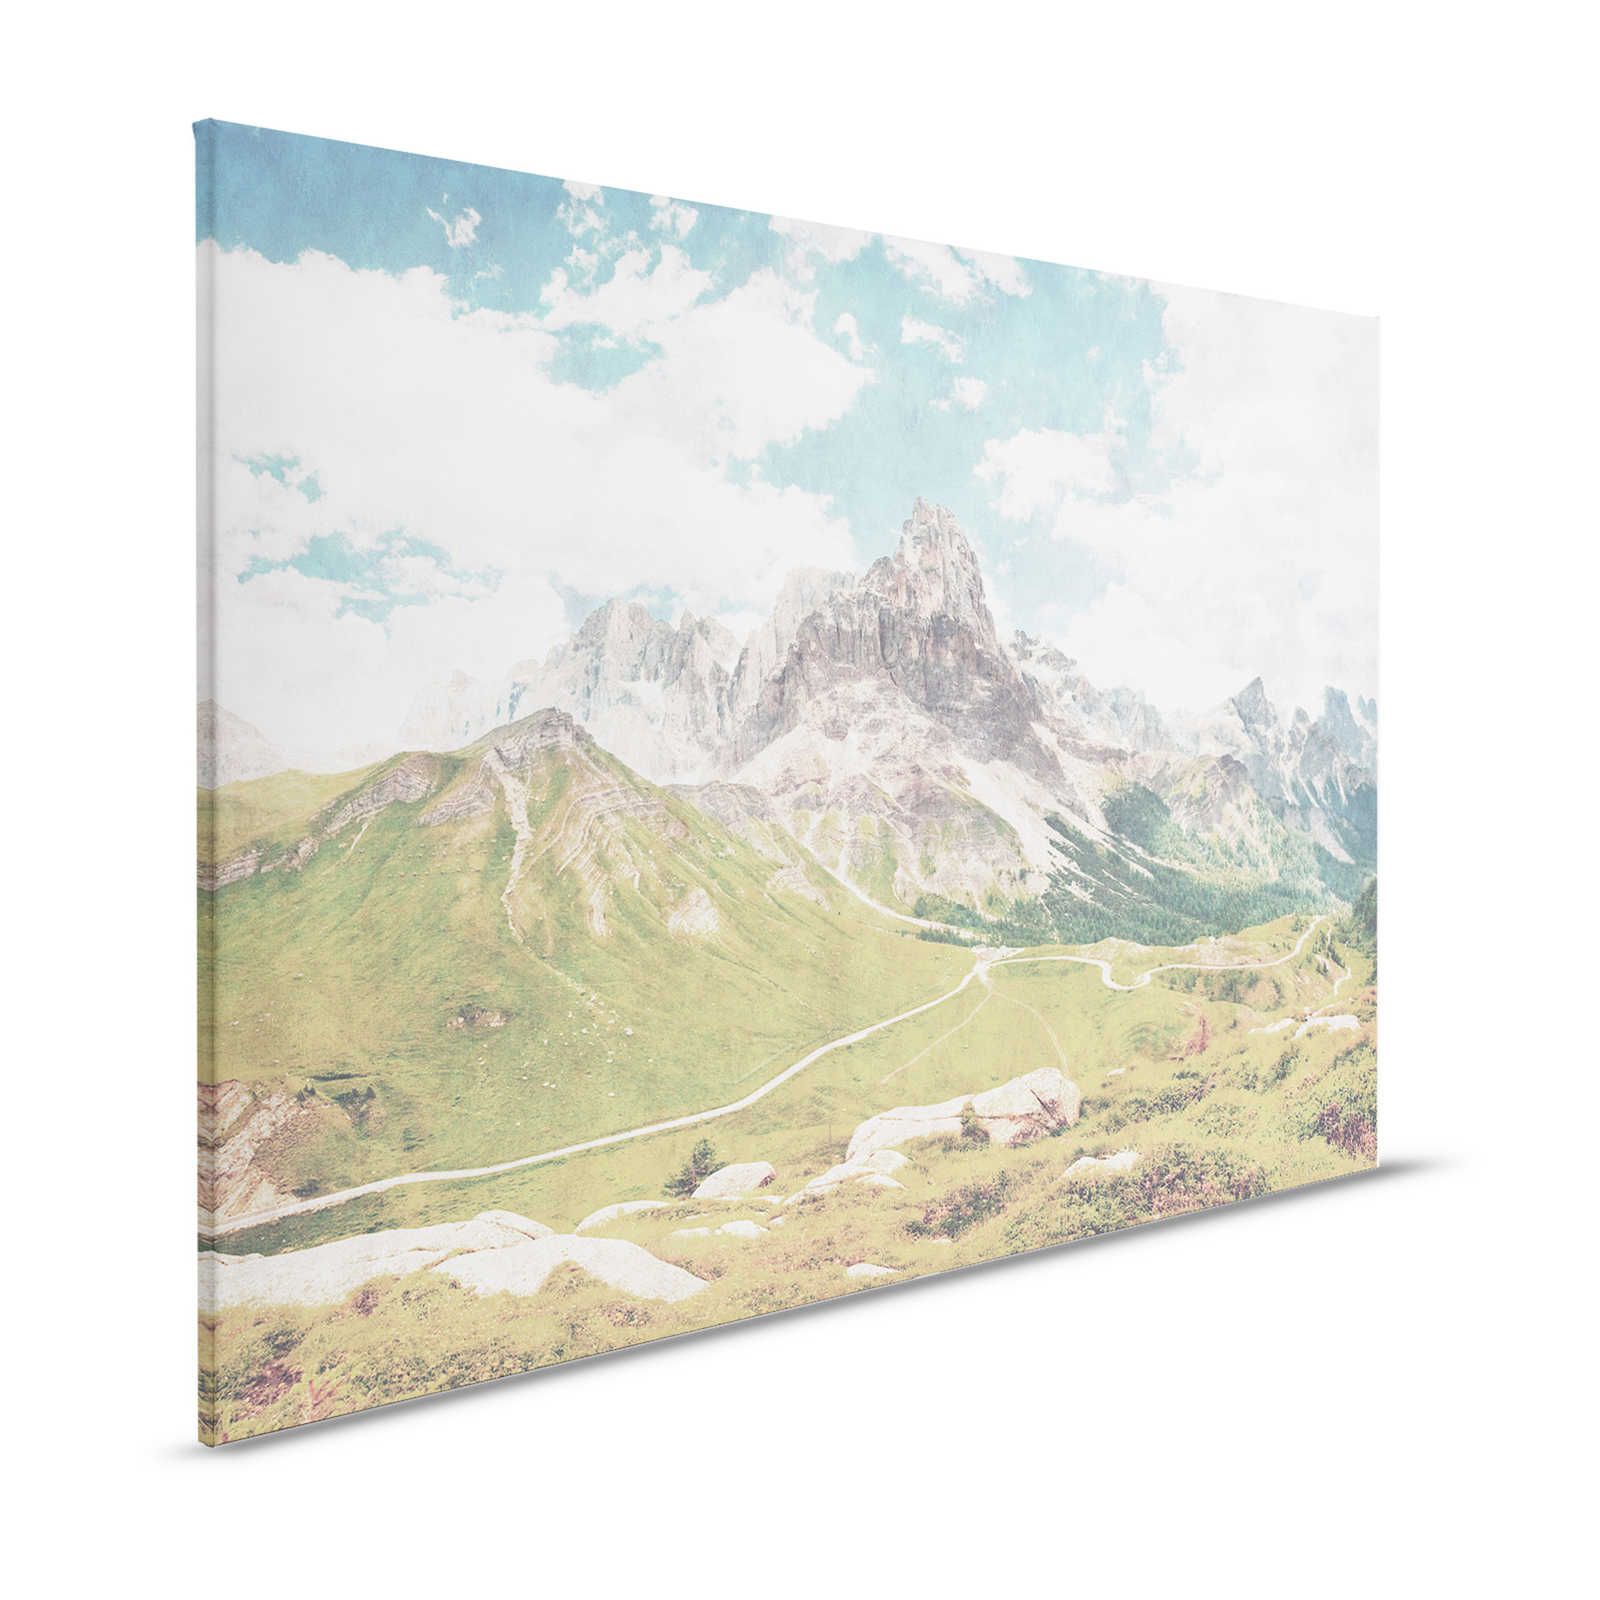 Dolomiti 2 - Cuadro en lienzo Fotografía Retro Dolomitas - 1,20 m x 0,80 m
